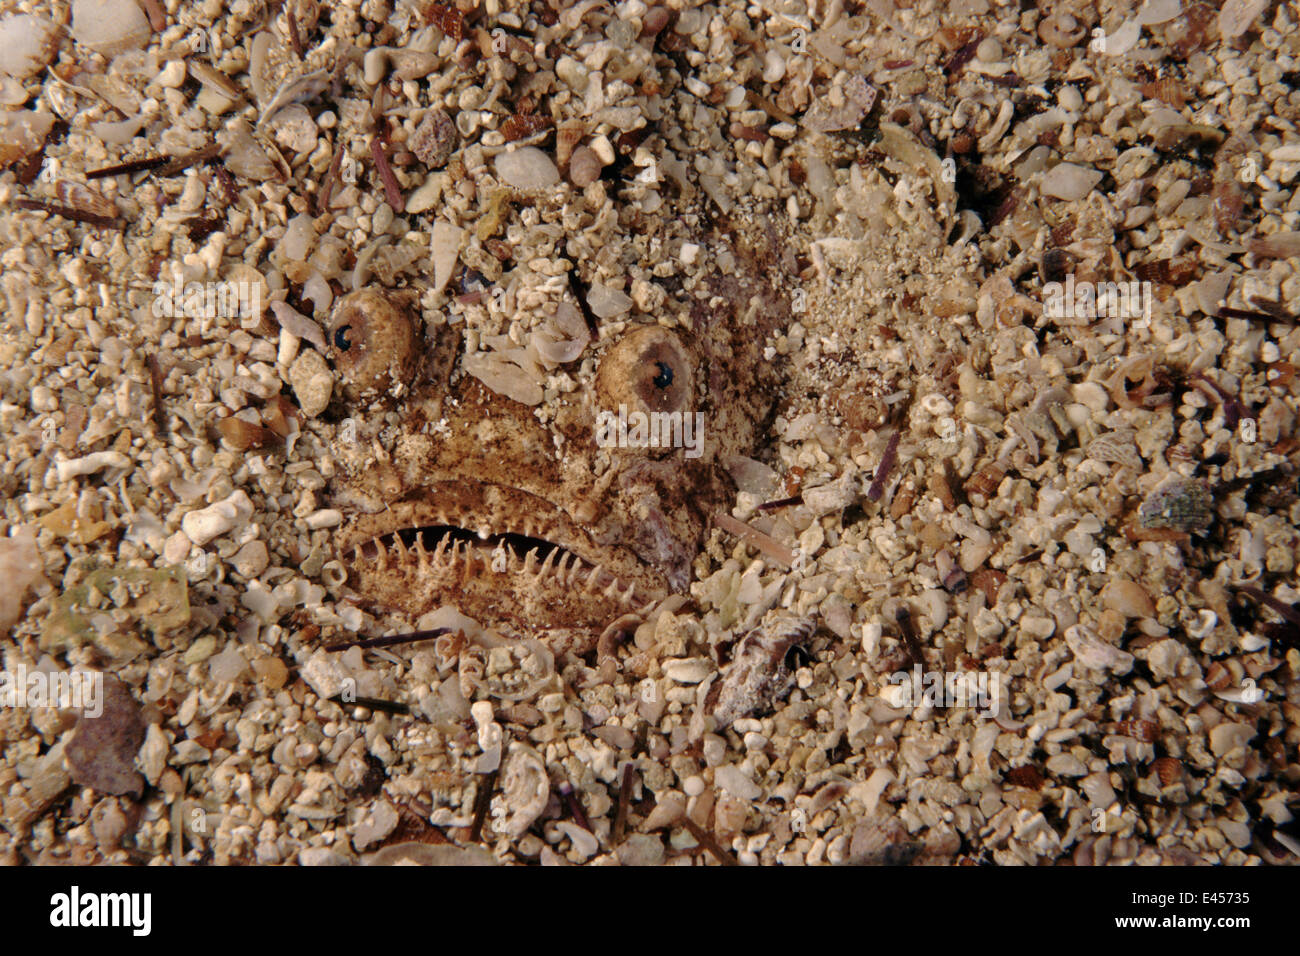 Stargazer fish hidden in sand, Mediterranean, Italy Stock Photo